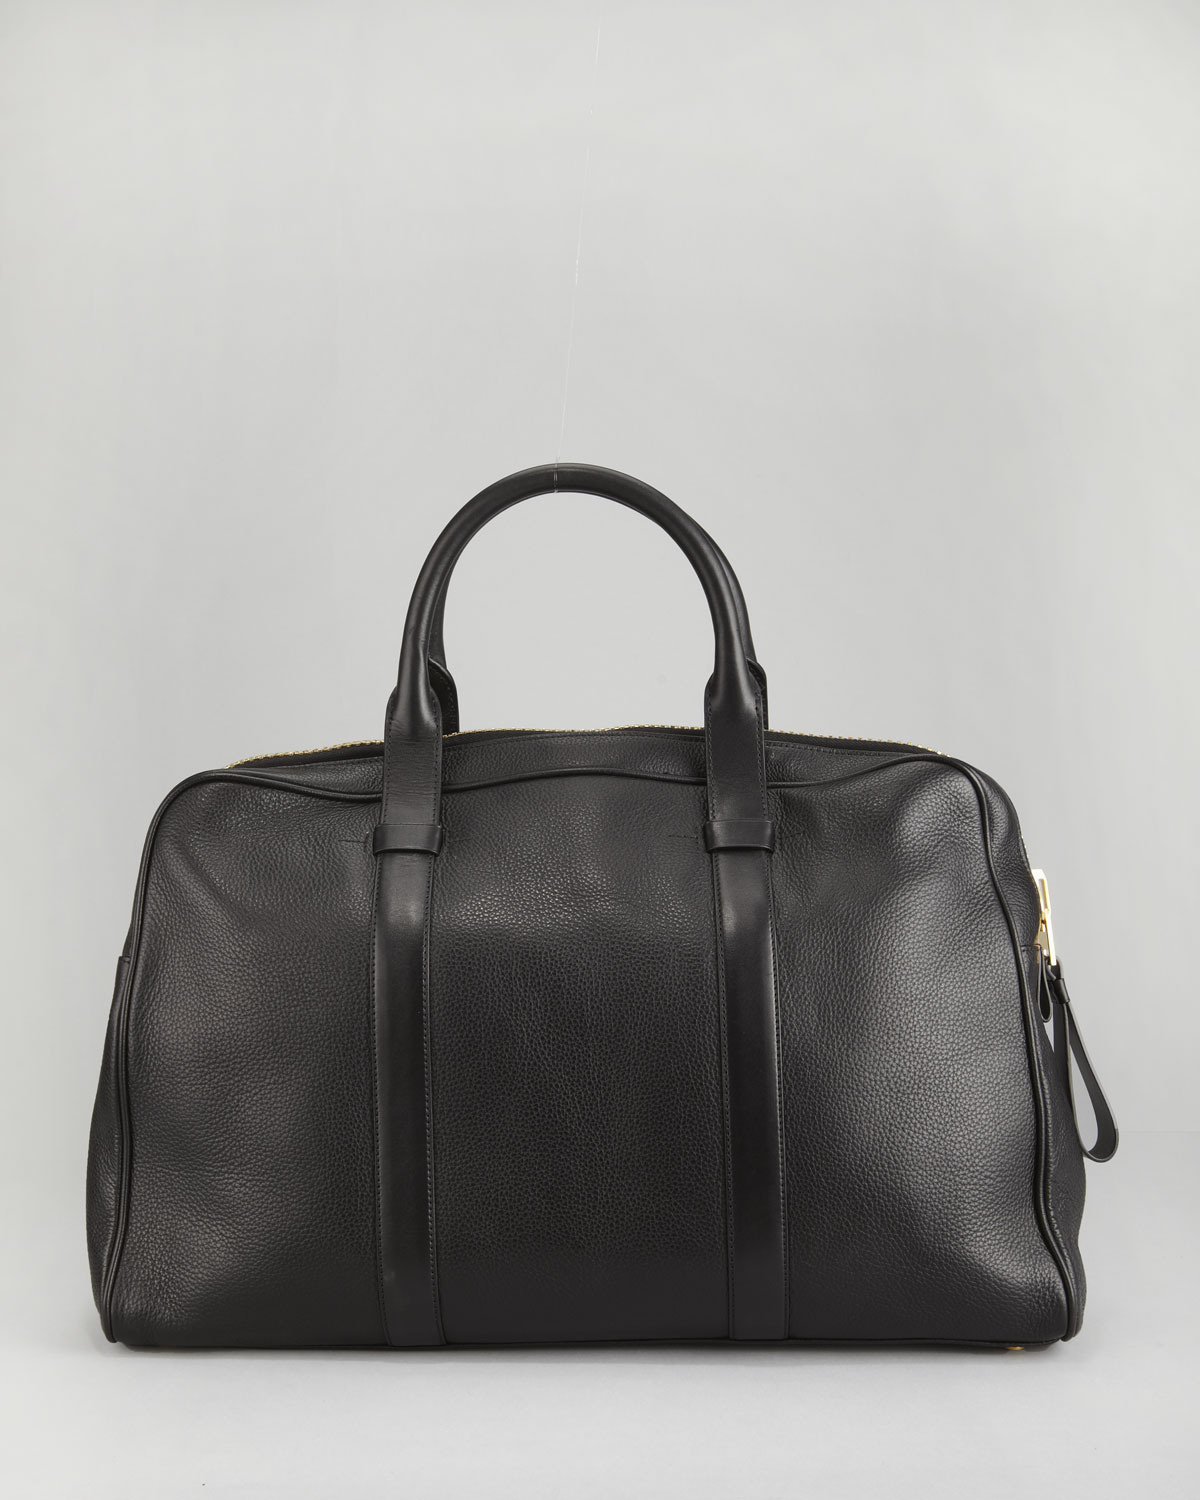 Tom ford Buckley Leather Duffel Bag in Black | Lyst